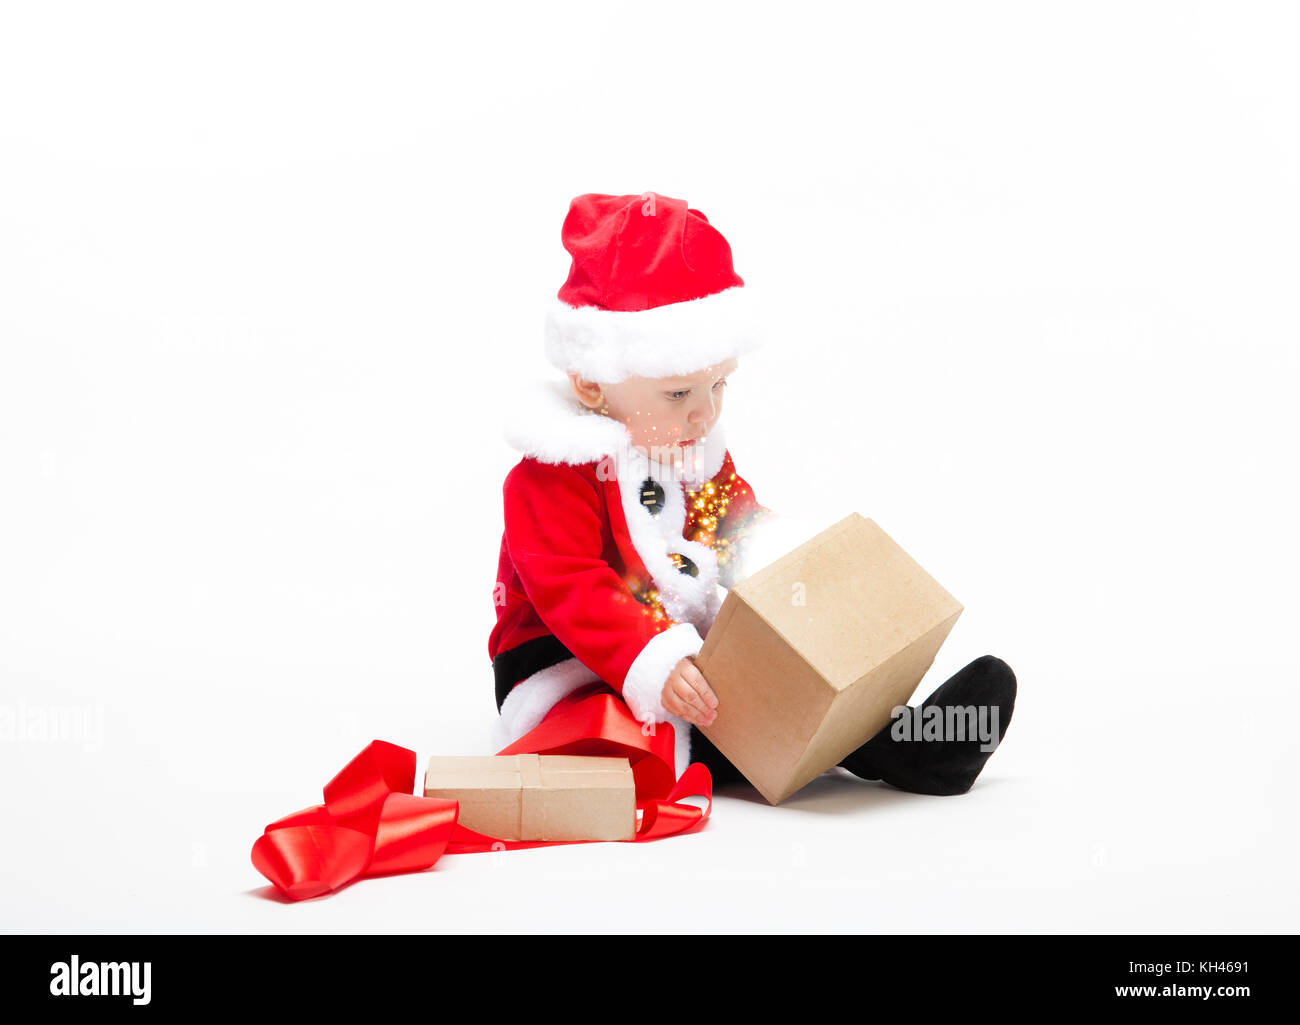 Babbo Natale baby in rosso vestiti di natale con confezione regalo isolato su bianco Foto Stock